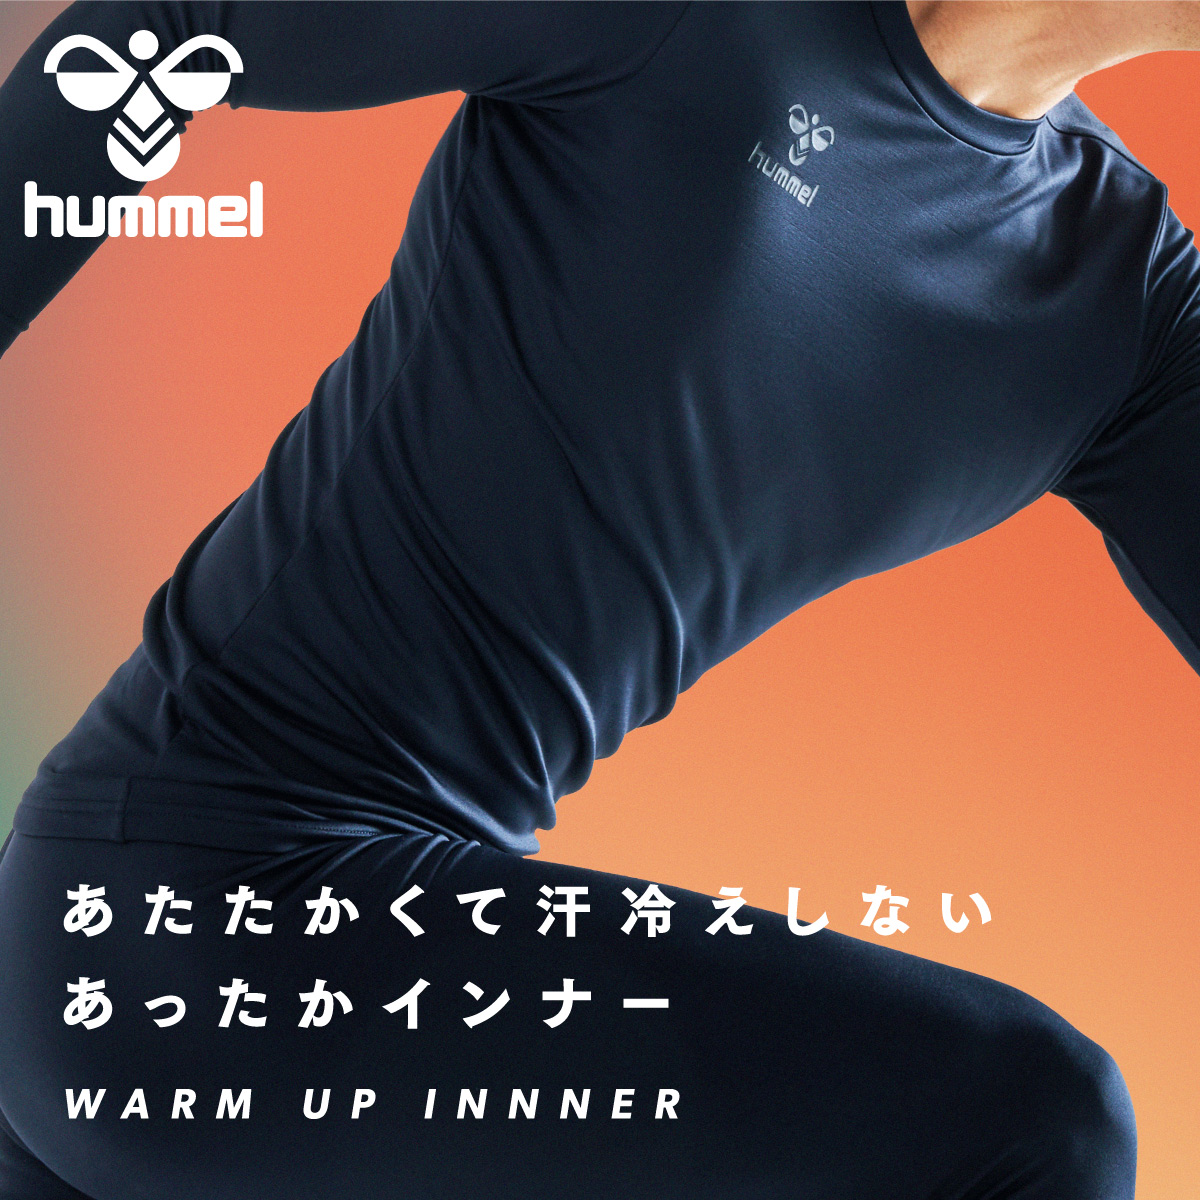 hummel 17FW ◆ ヒュンメル ジュニア インナーシャツ ◆ あったかインナーシャツ ◆ size : 130 ◆ ホワイト ◆ 017-HJP5145-10-130-002